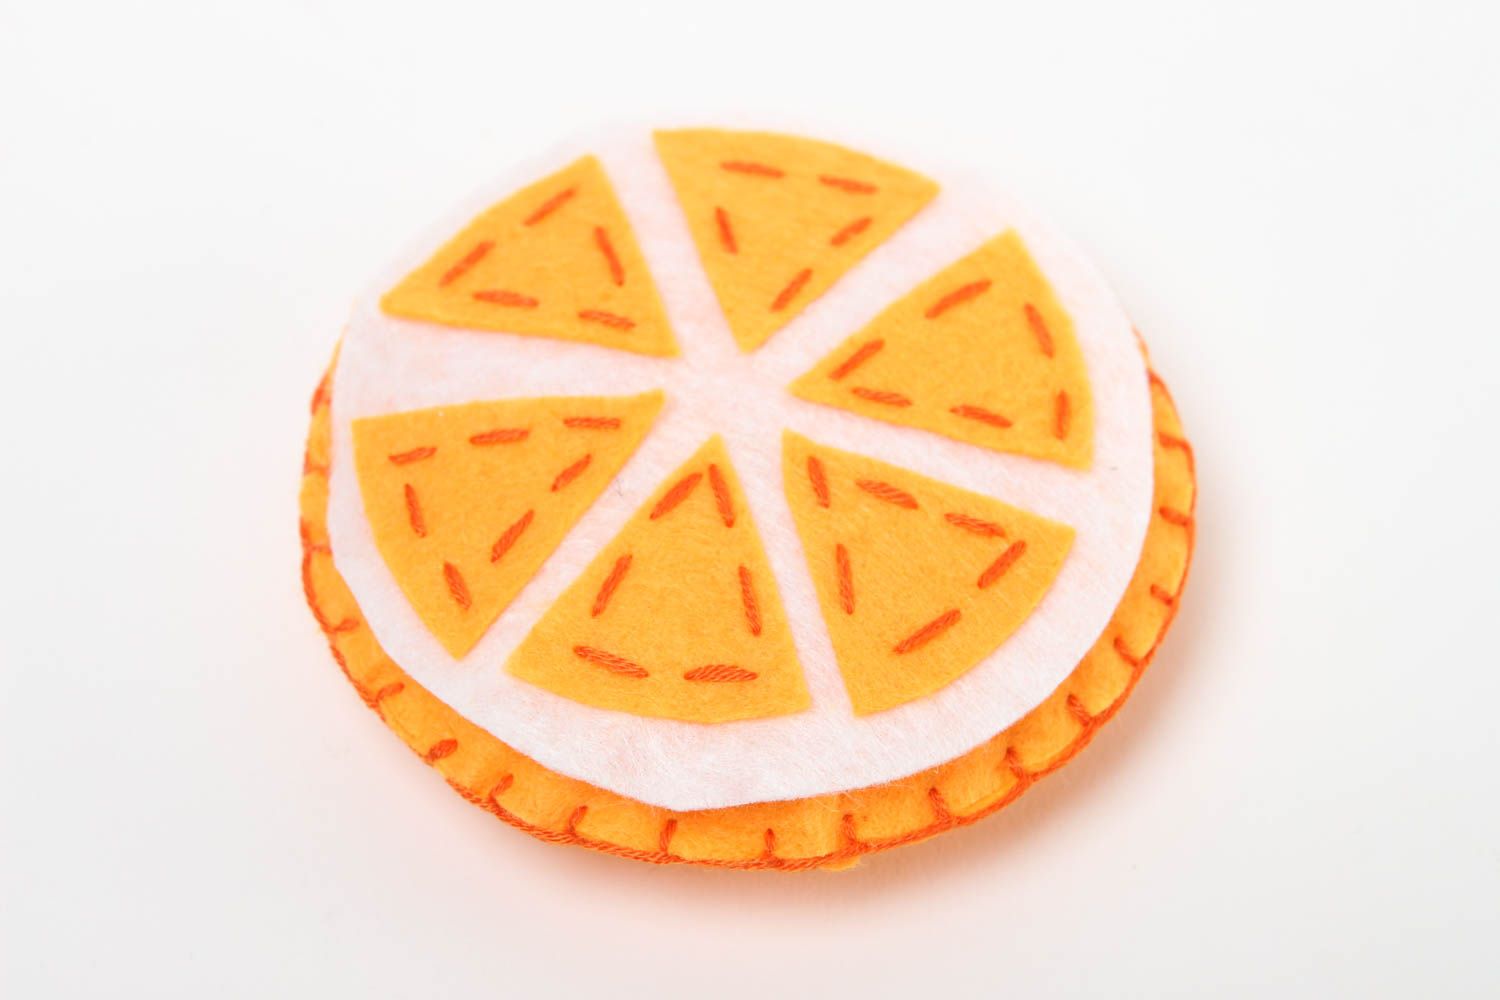 Мягкая игрушка ручной работы игрушка из ткани фетровая игрушка Долька апельсина фото 2